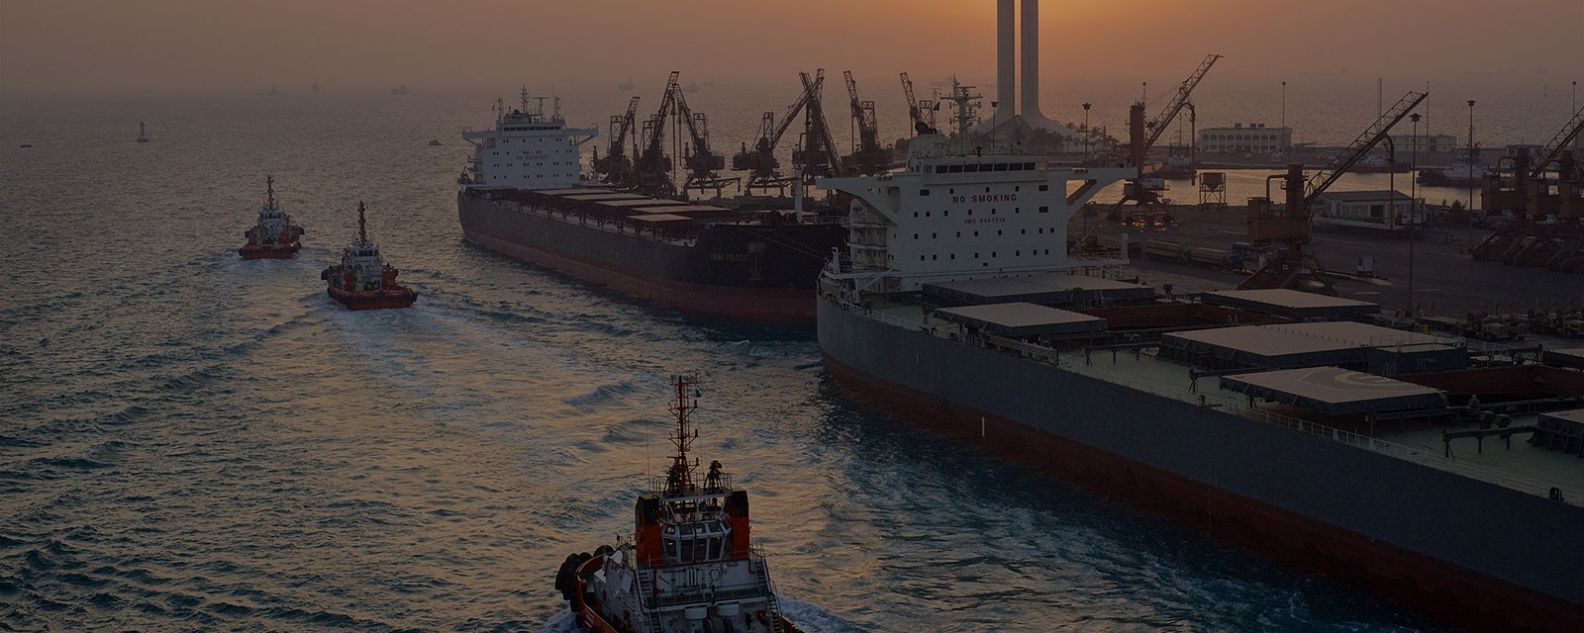 Rimorchiatori e navi mercantili, porto di Jeddah, Arabia Saudita